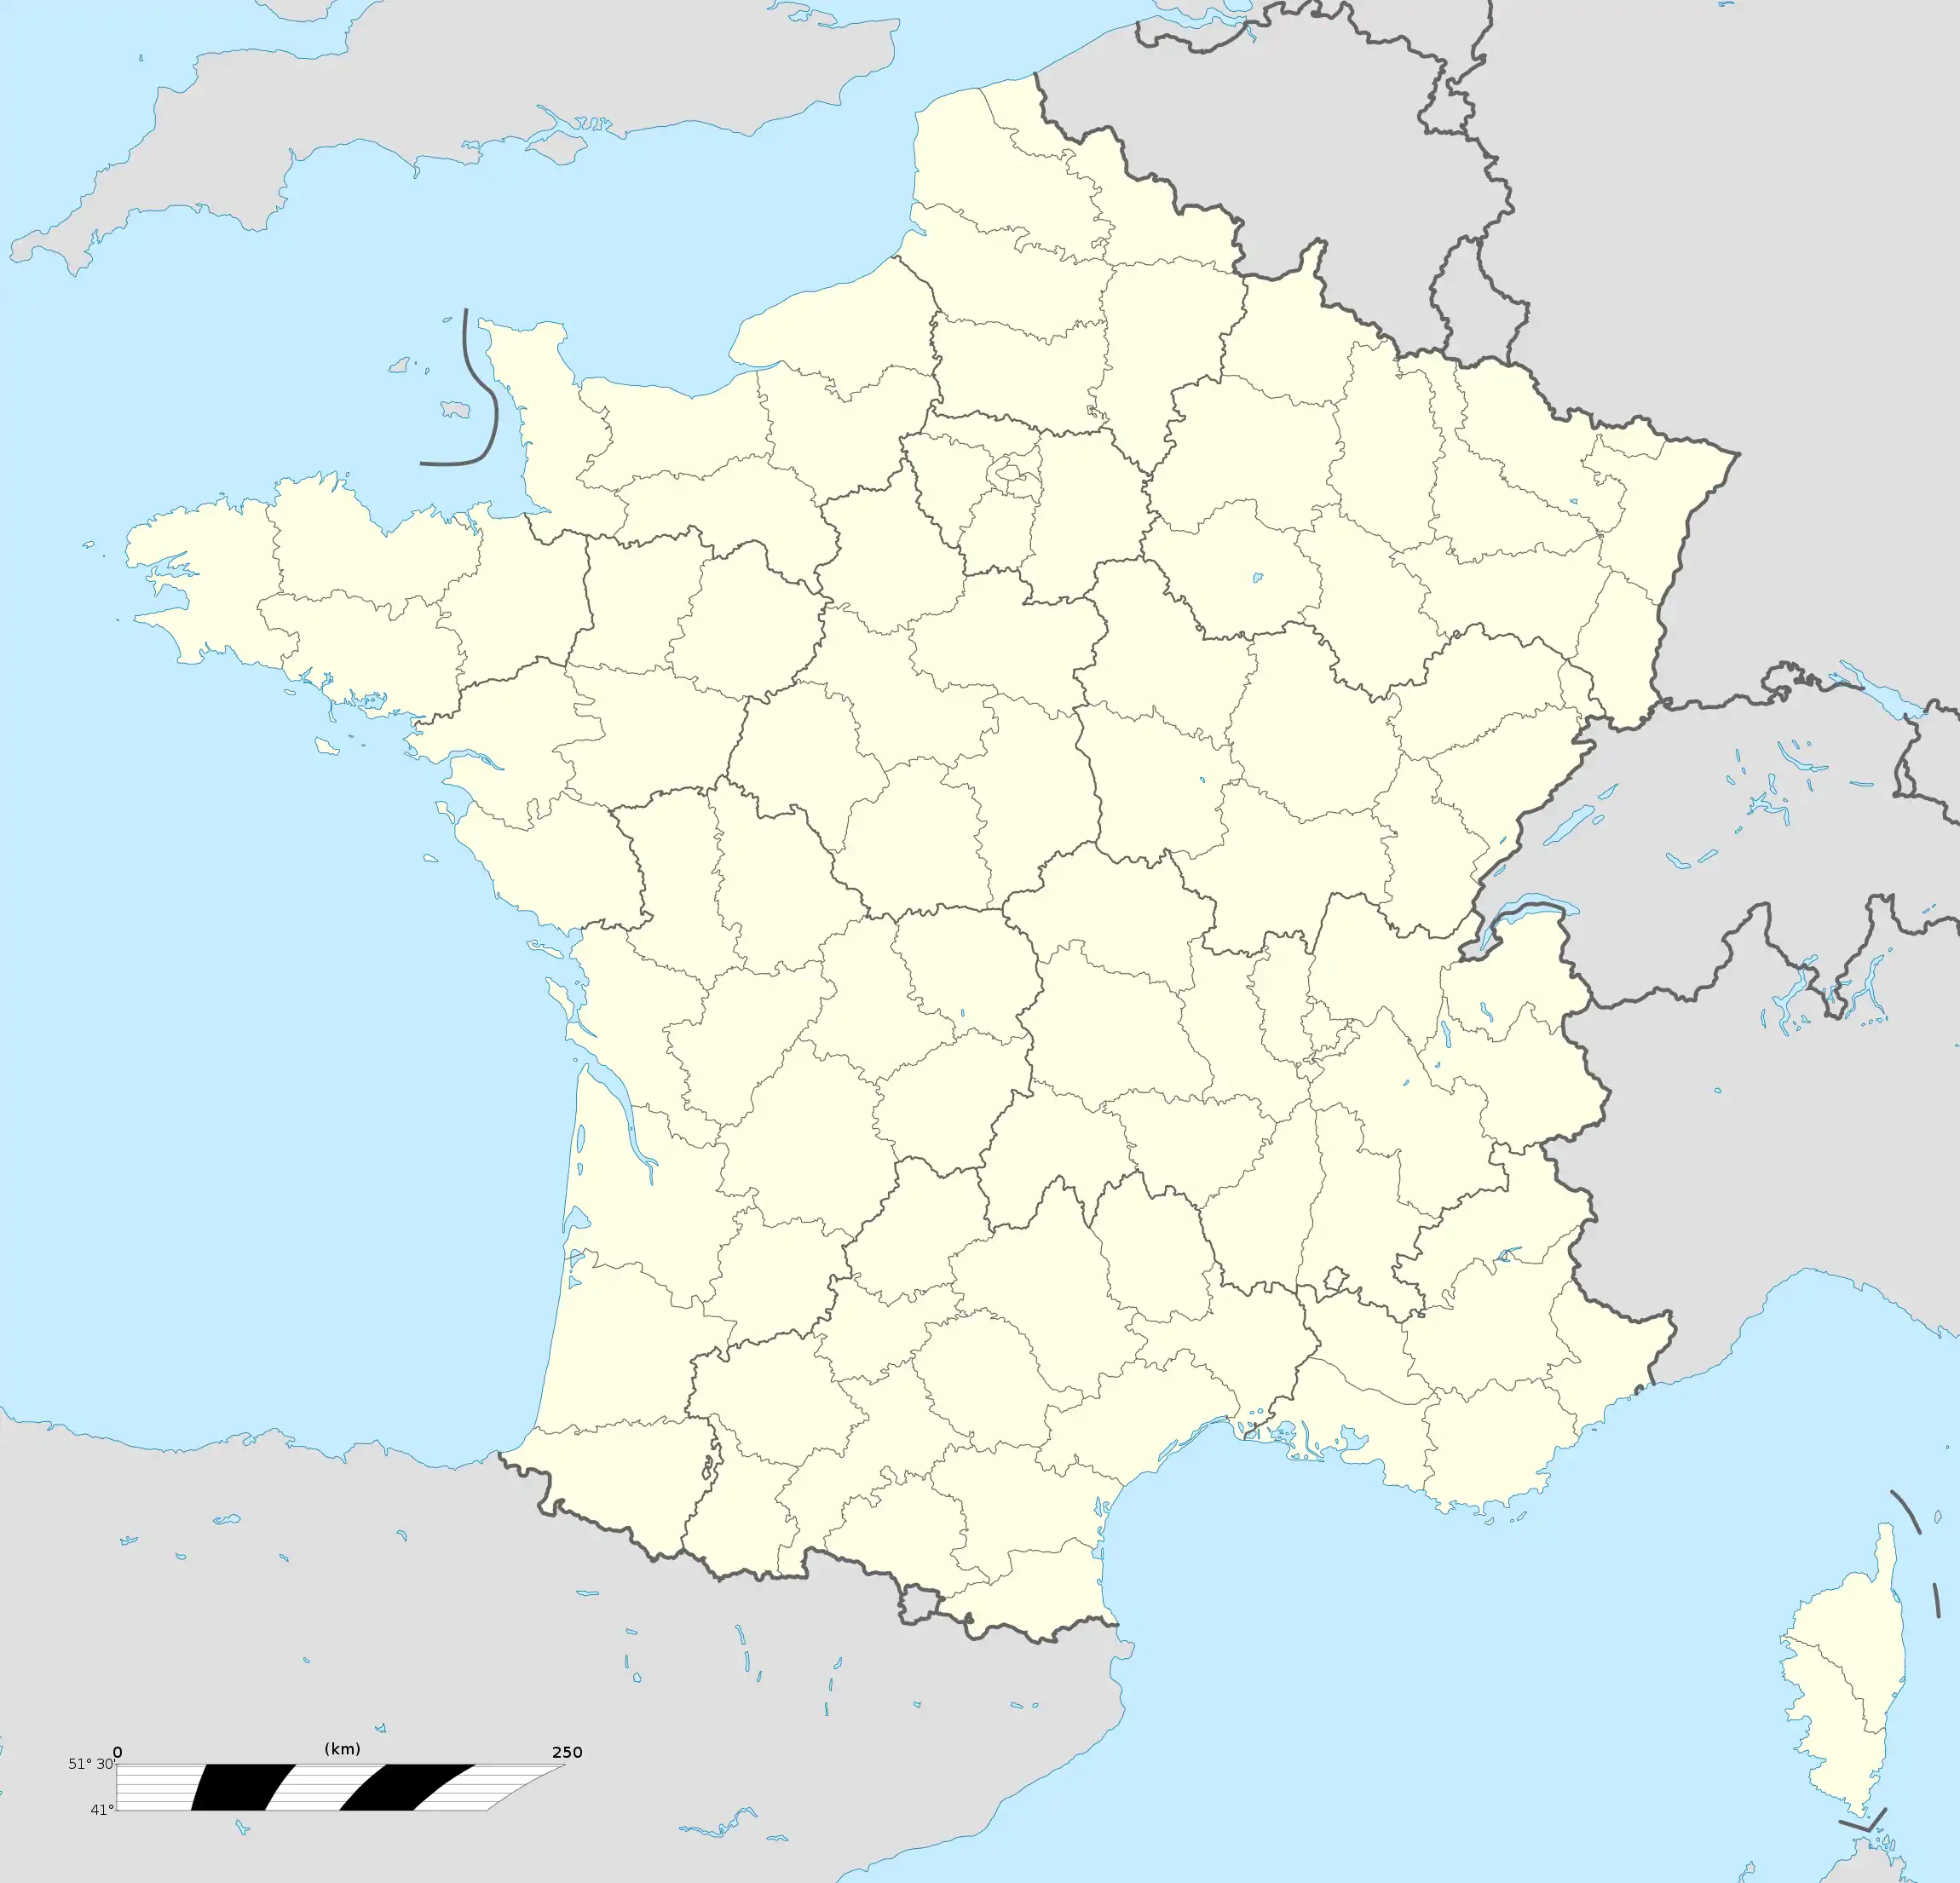 (Voir situation sur carte : France)